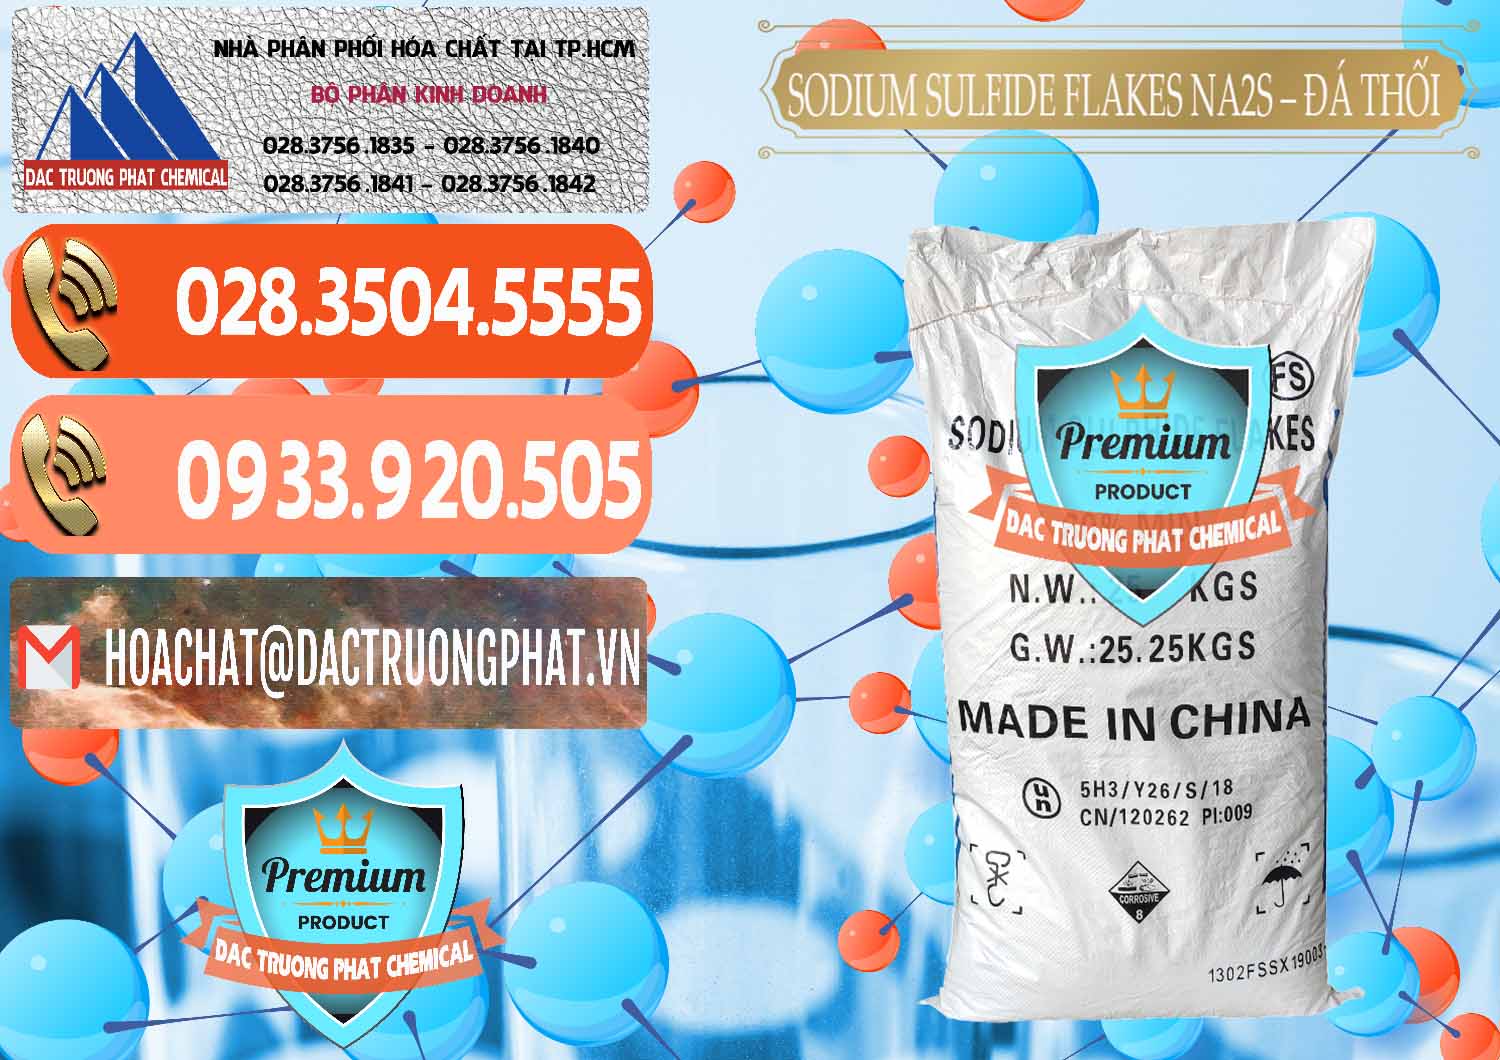 Chuyên cung cấp & bán Sodium Sulfide Flakes NA2S – Đá Thối Đỏ Trung Quốc China - 0150 - Đơn vị chuyên bán & phân phối hóa chất tại TP.HCM - hoachatmientay.com